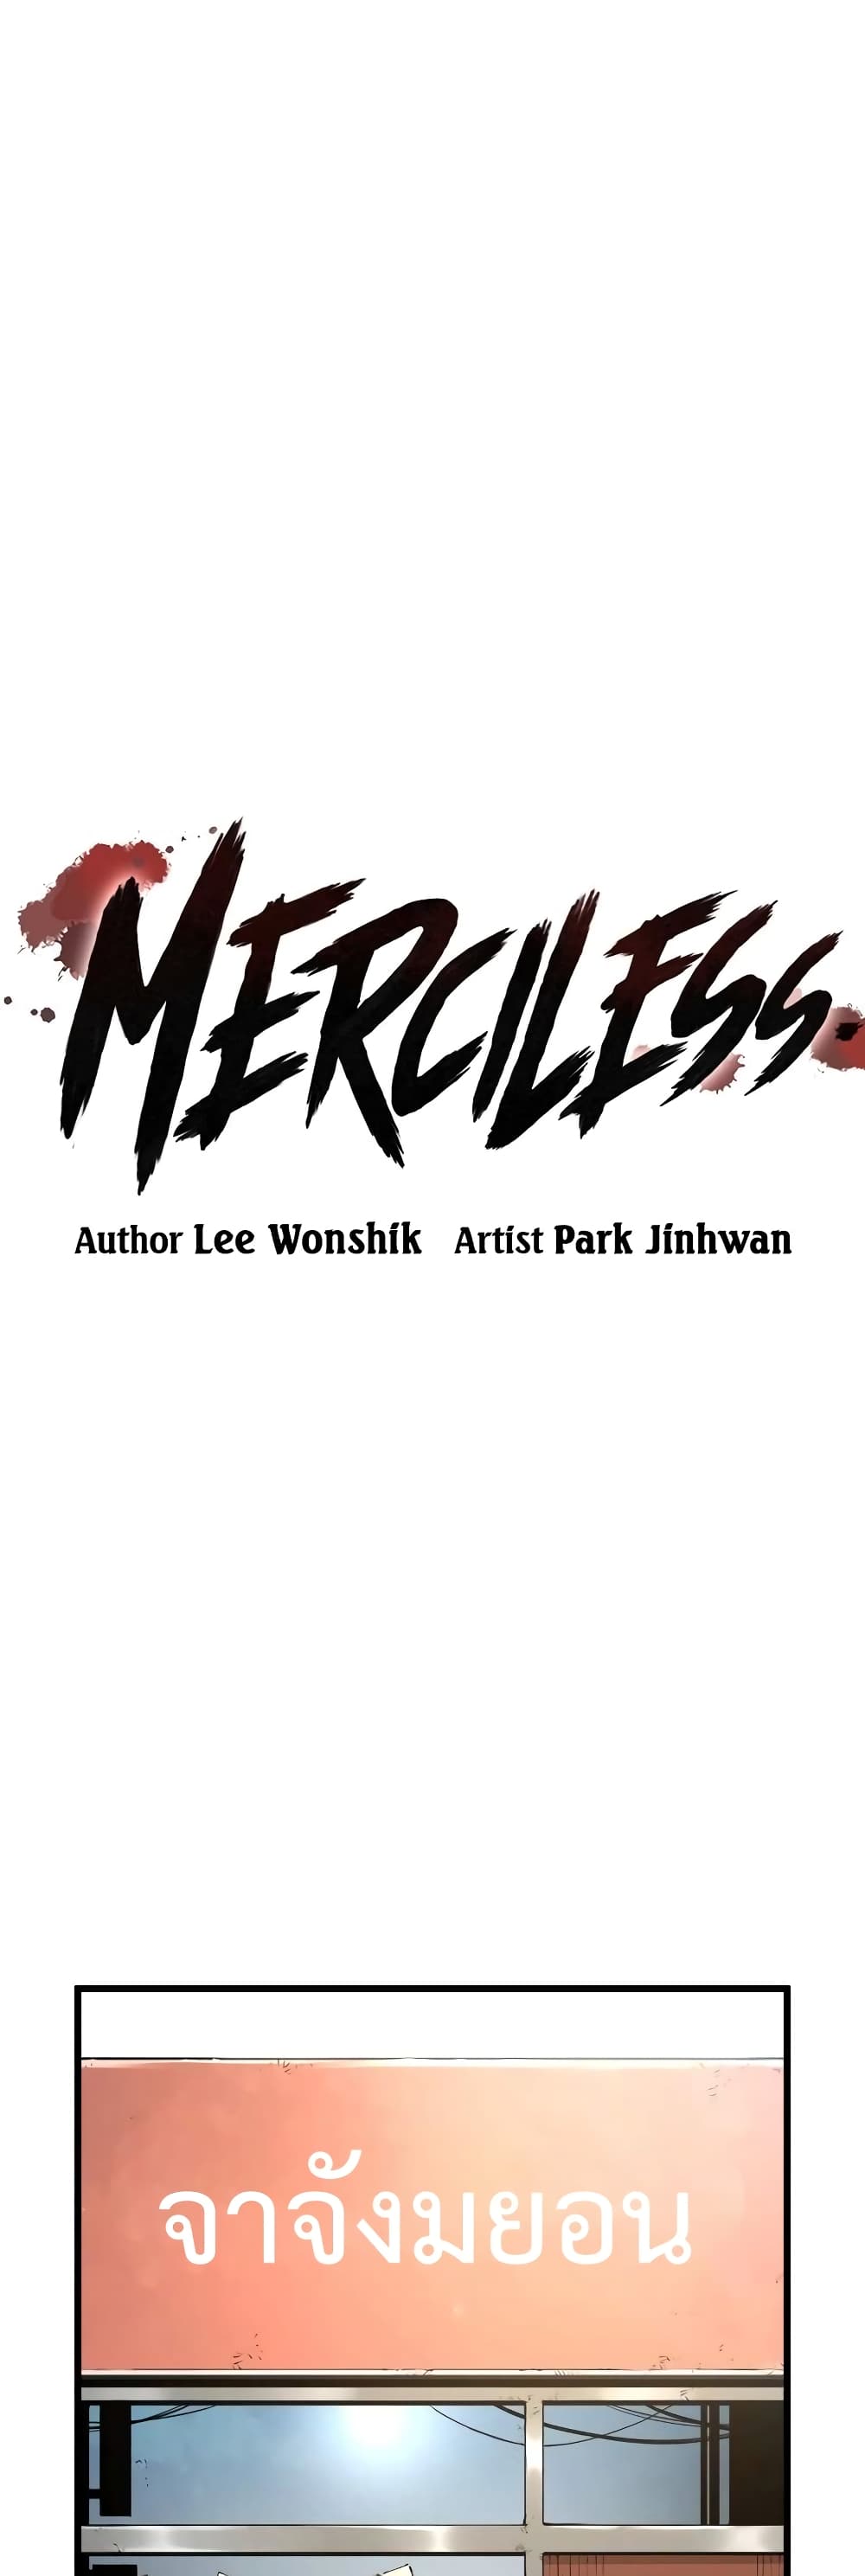 Merciless 6 (1)